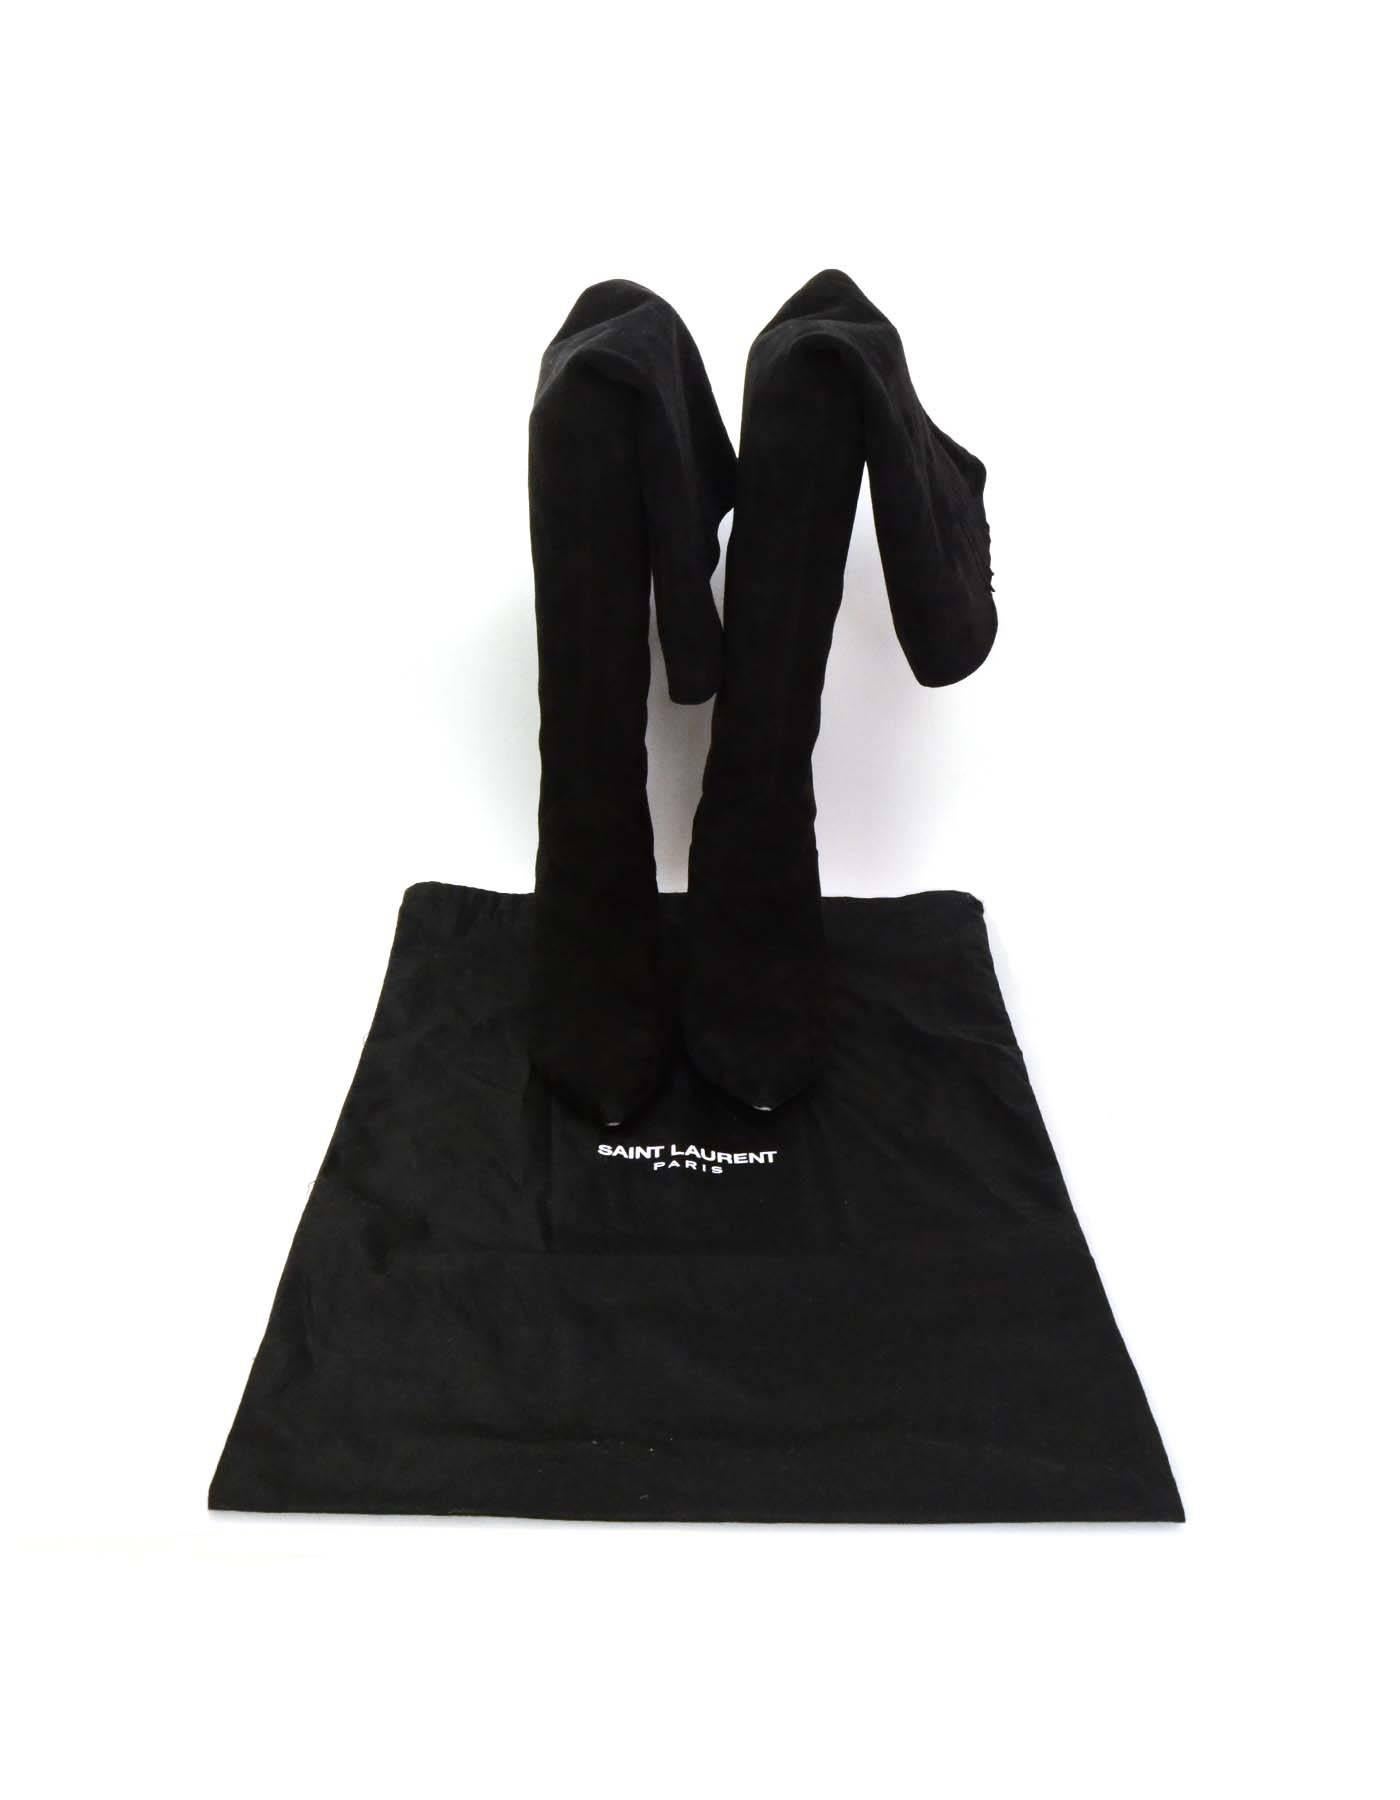 Saint Laurent Black Cat Suede Thigh High Boots sz 39 rt $1, 495 1